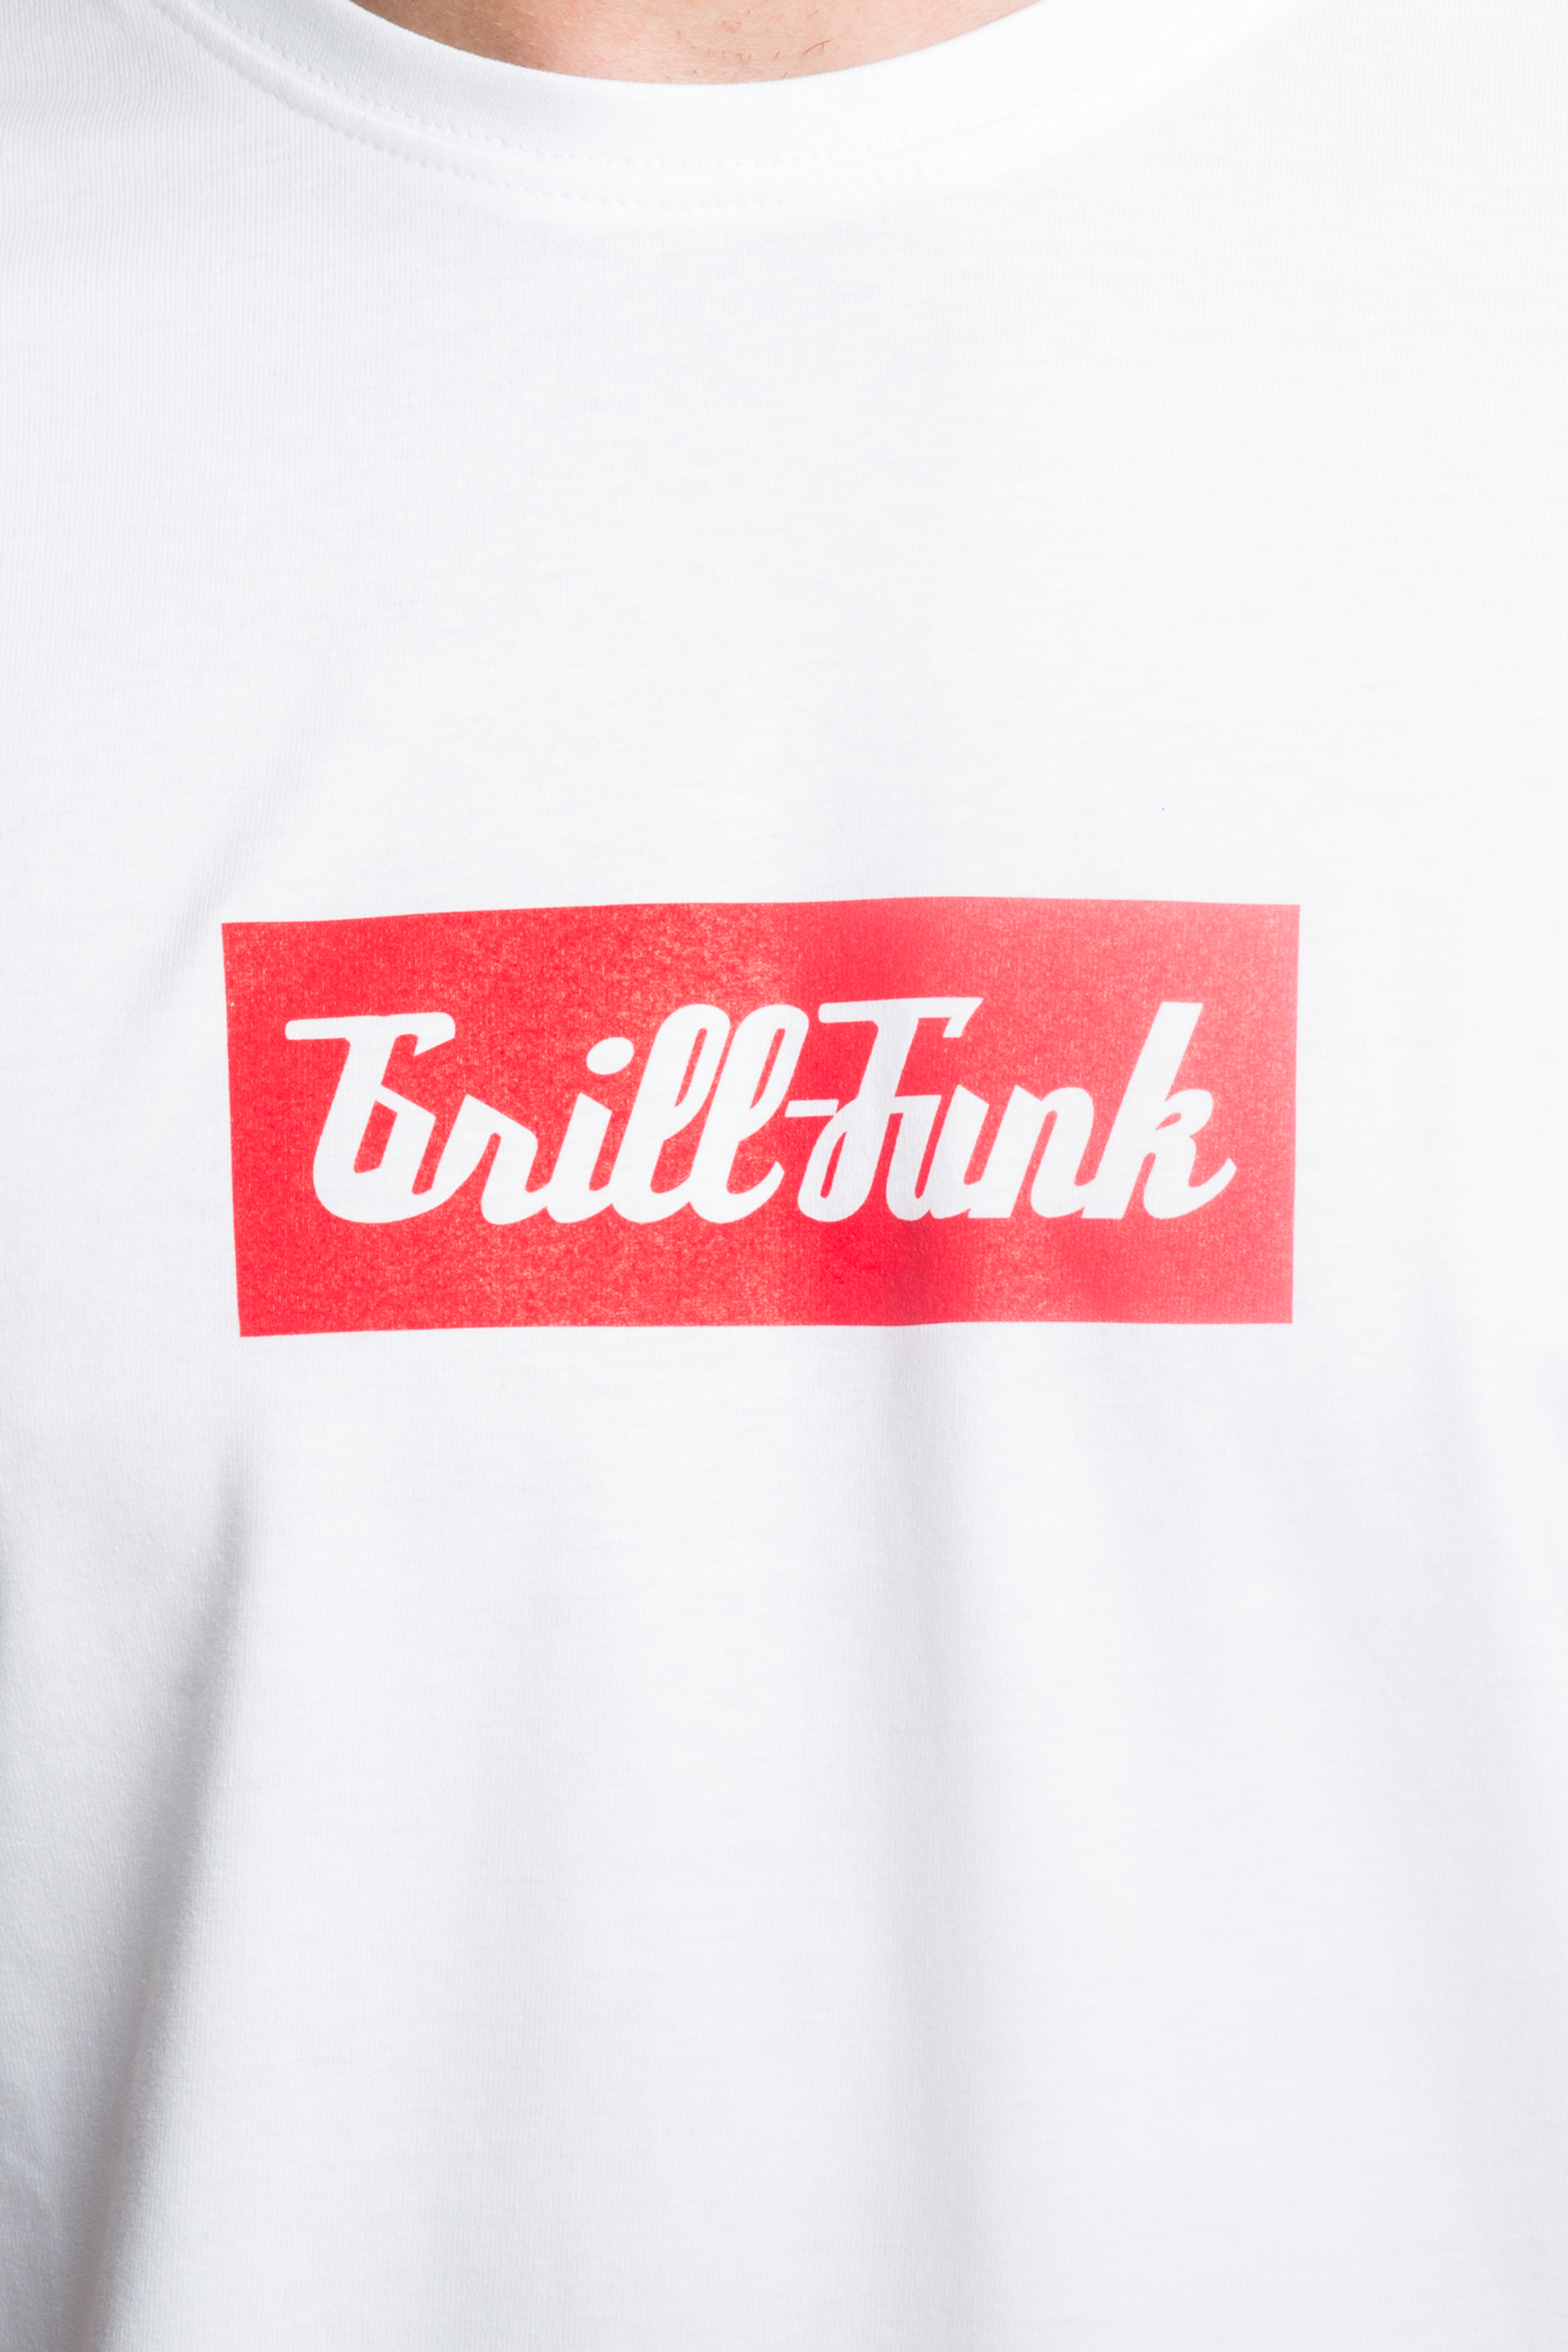 Koszulka męska Grill-Funk Classic Rectangle - biała